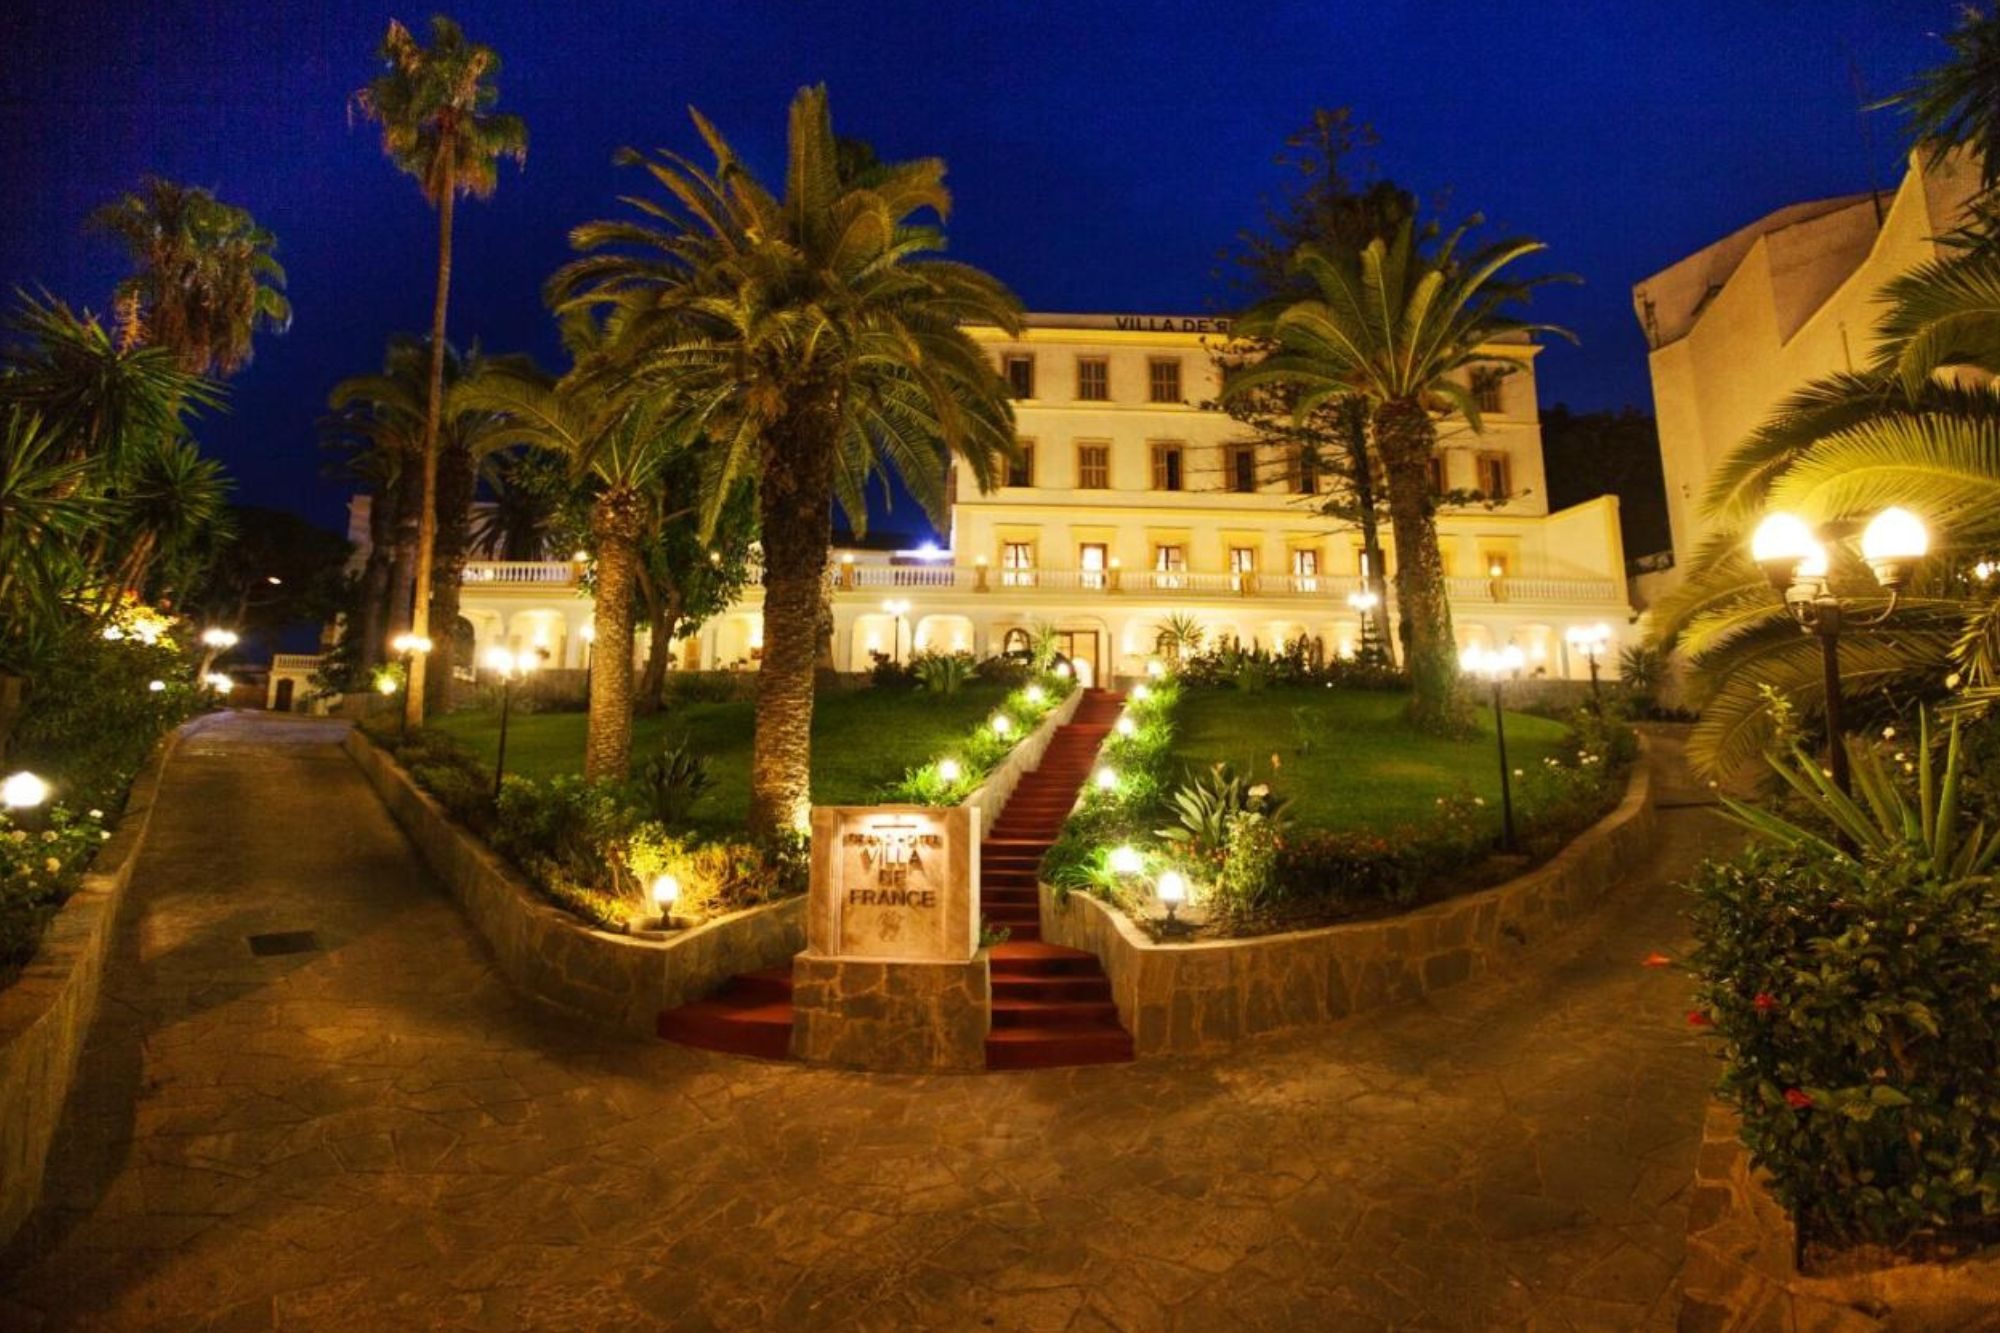 Grand Hotel Villa de France _ Hotel de luxe de Tanger (3)